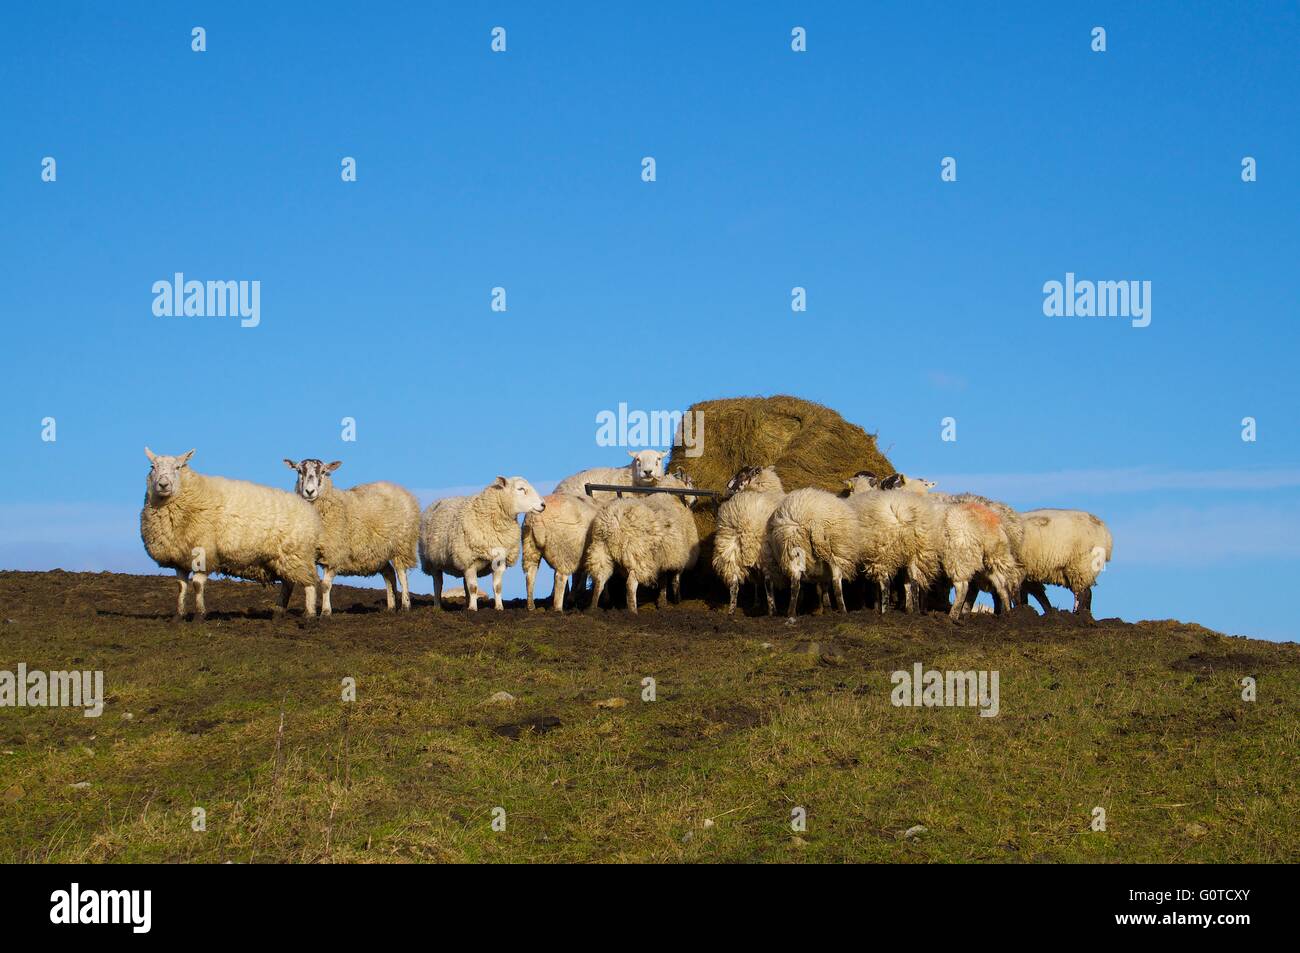 Schafe, die Fütterung von Heu Feeder. Hexham, Northumberland, England, Vereinigtes Königreich, Europa. Stockfoto